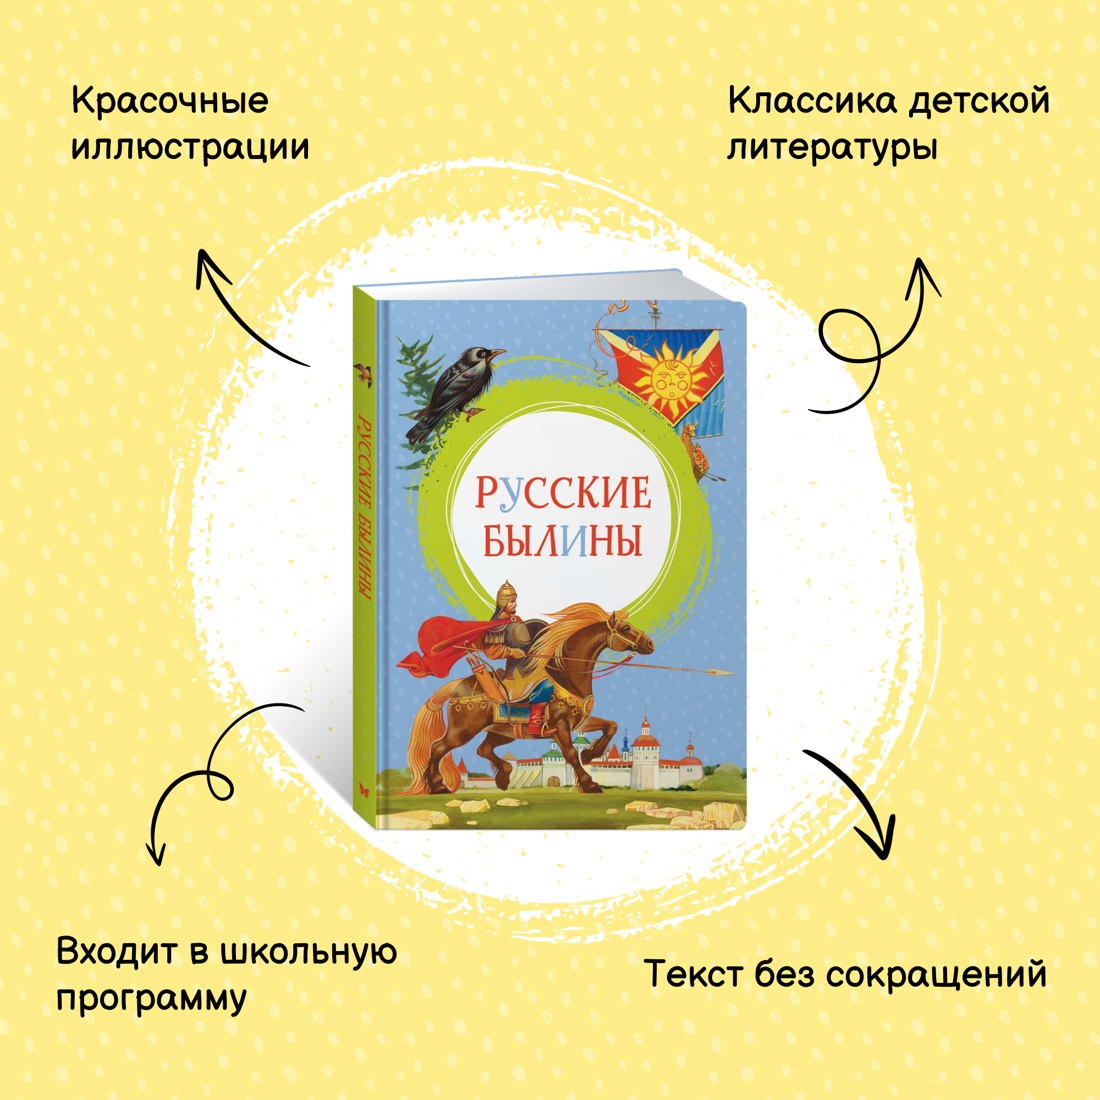 Промо материал к книге "Русские былины" №0